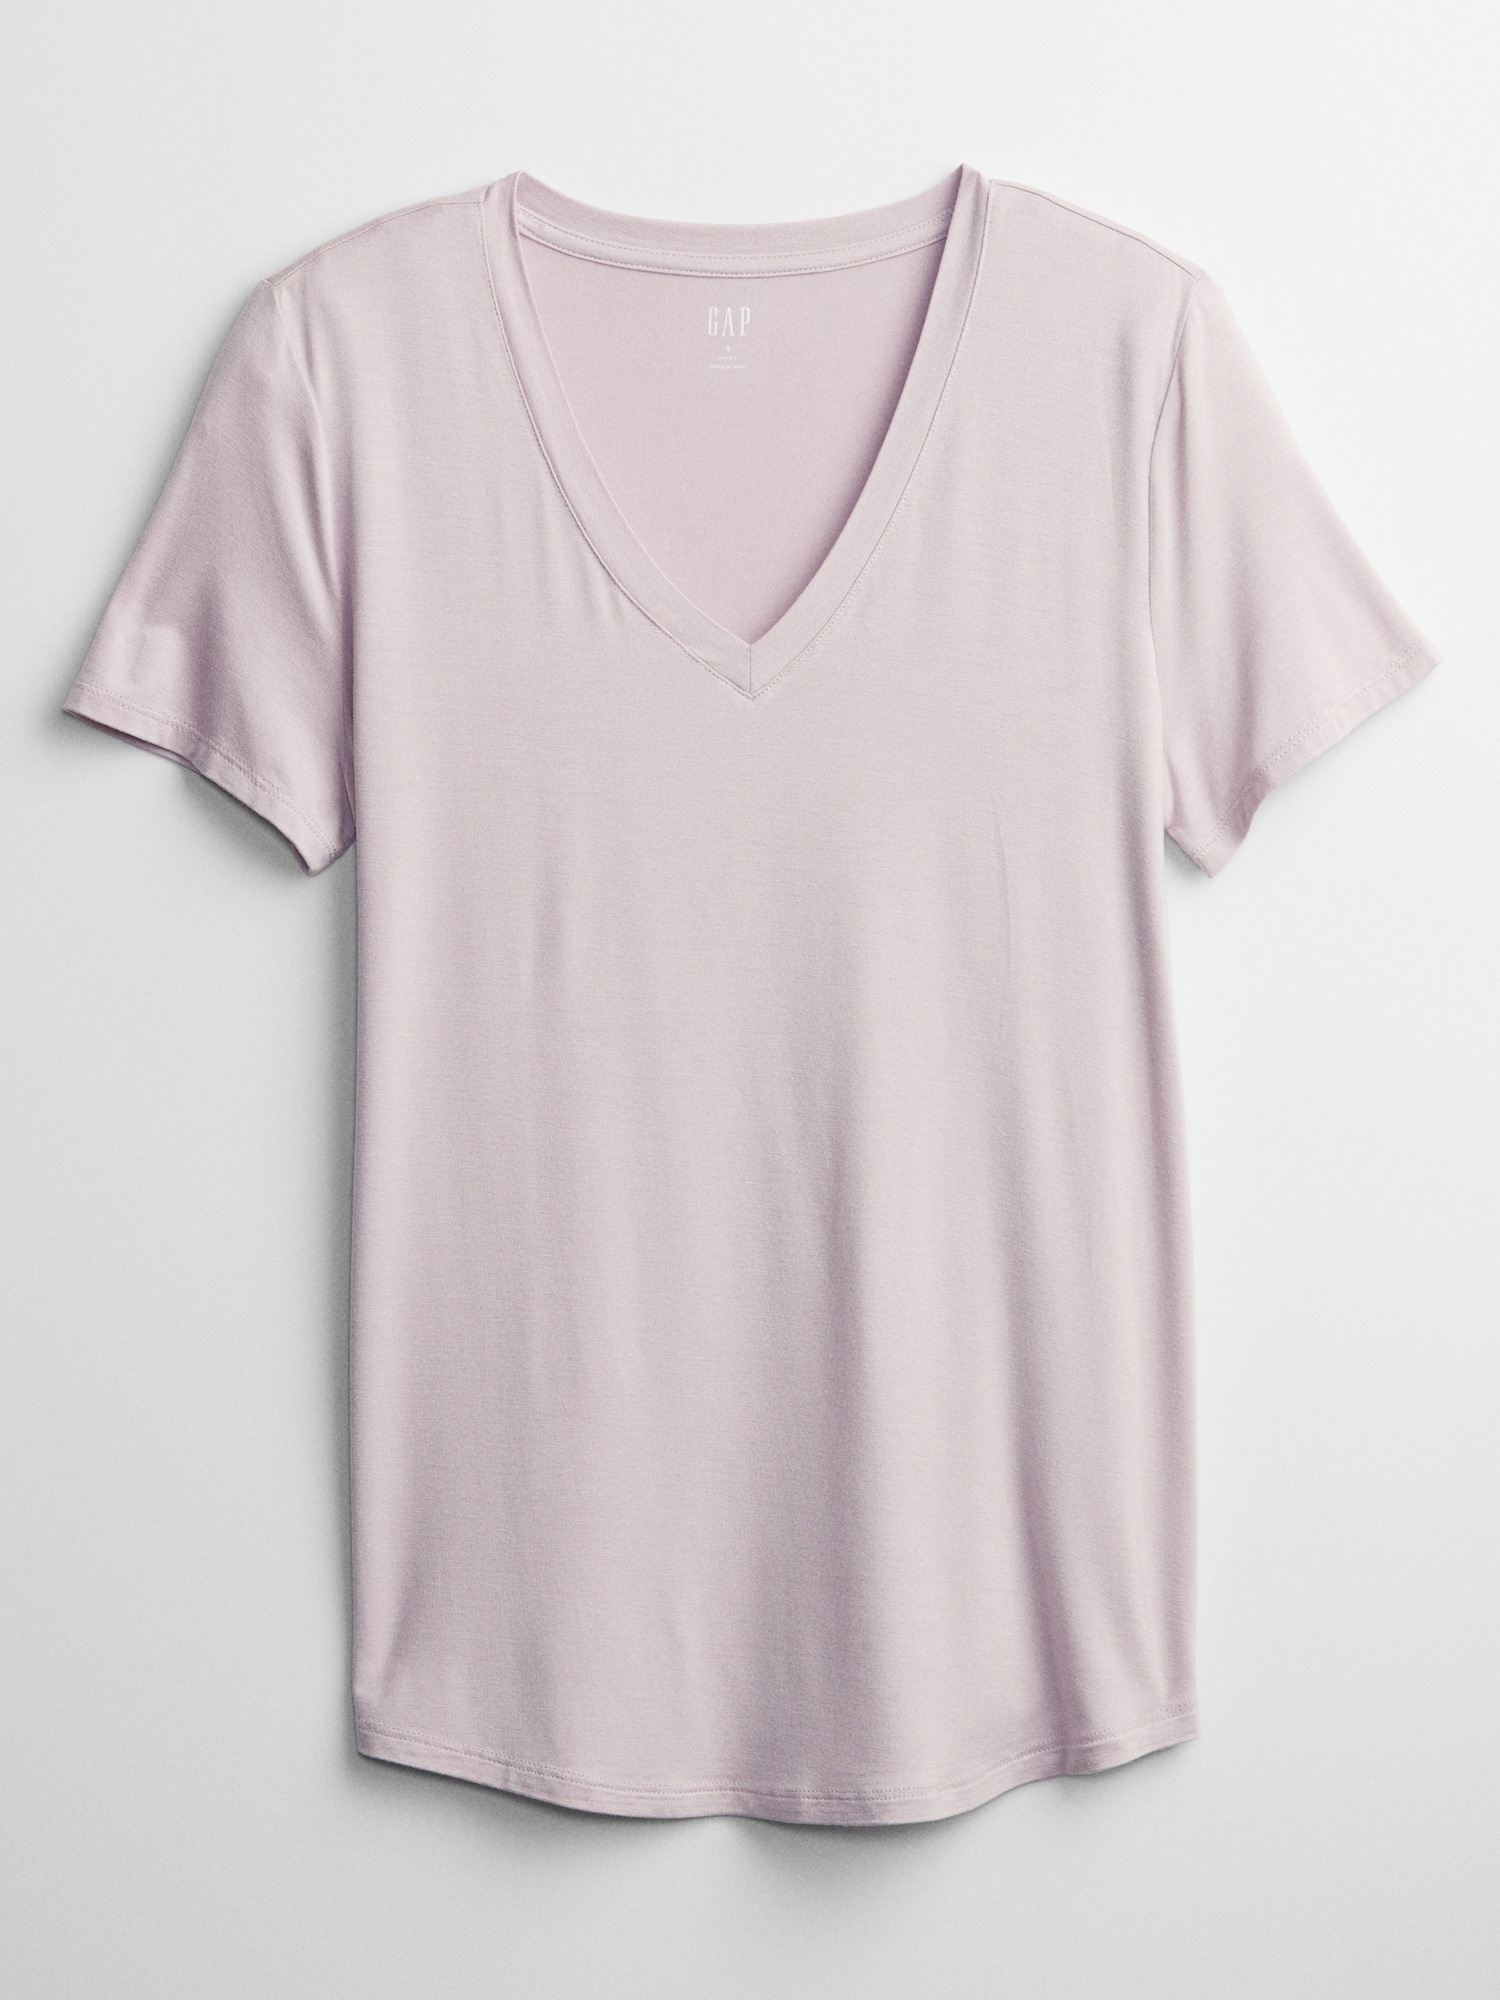 Luxe V-Neck T-Shirt | Gap Factory